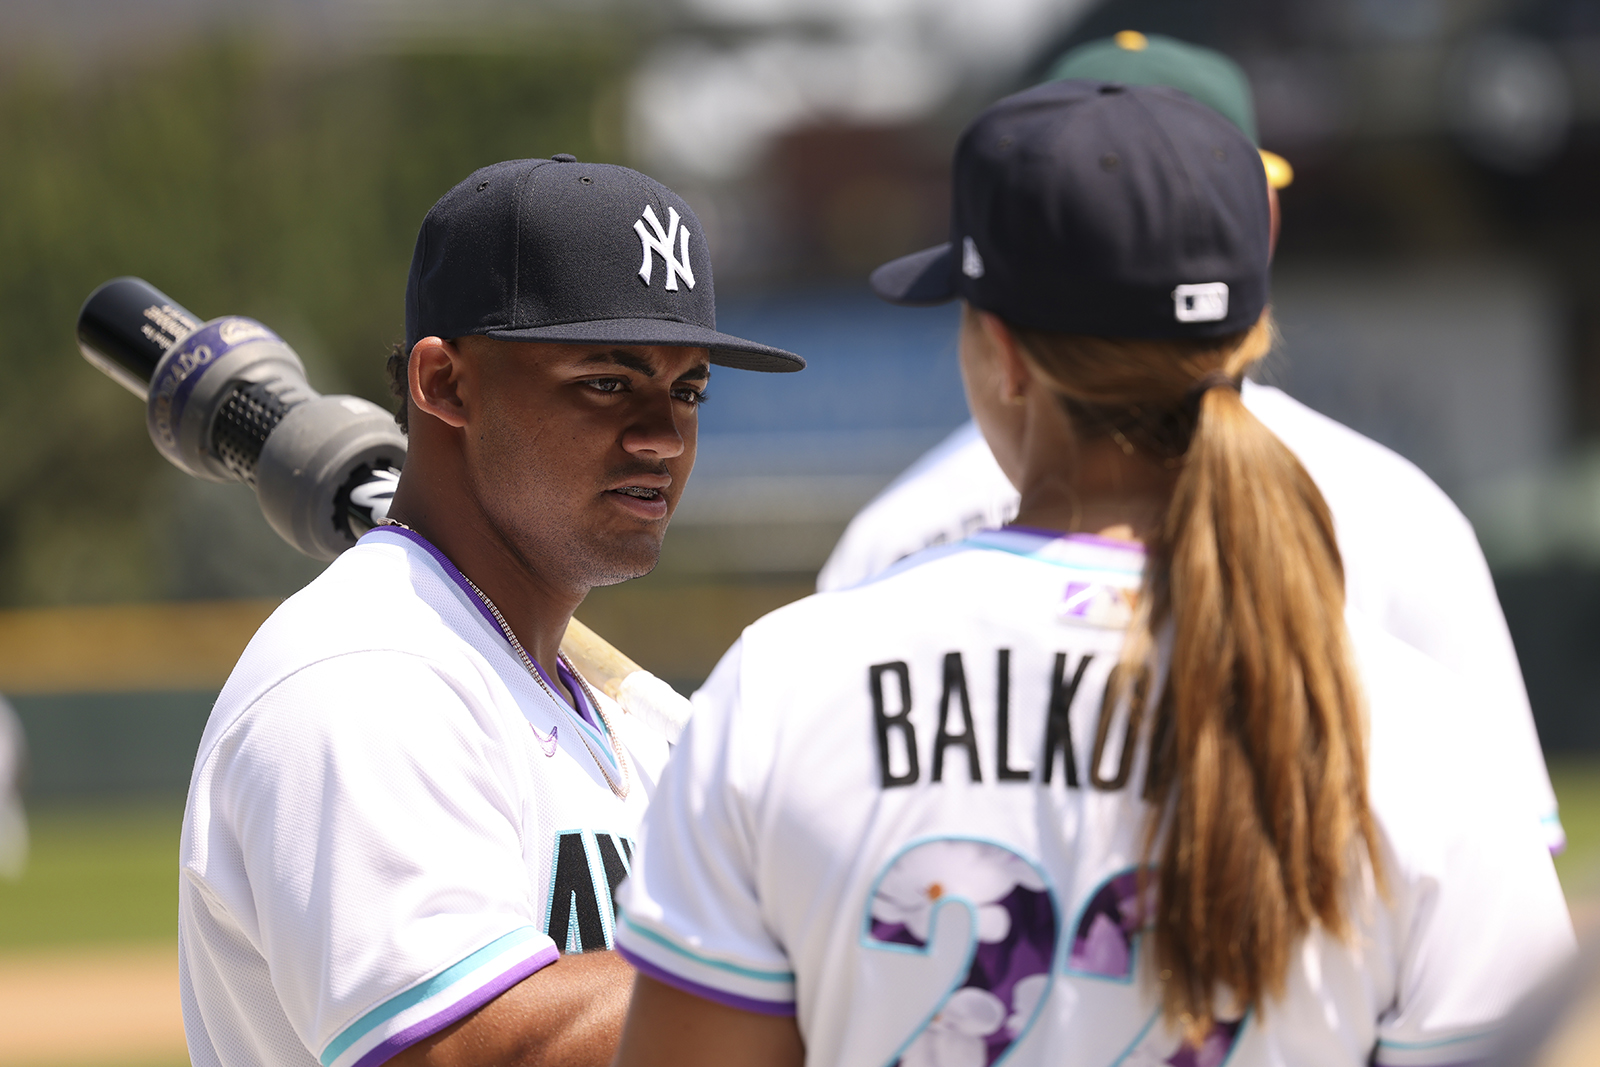 Rachel Balkovec, Yankees minor league manager, doing better - Newsday